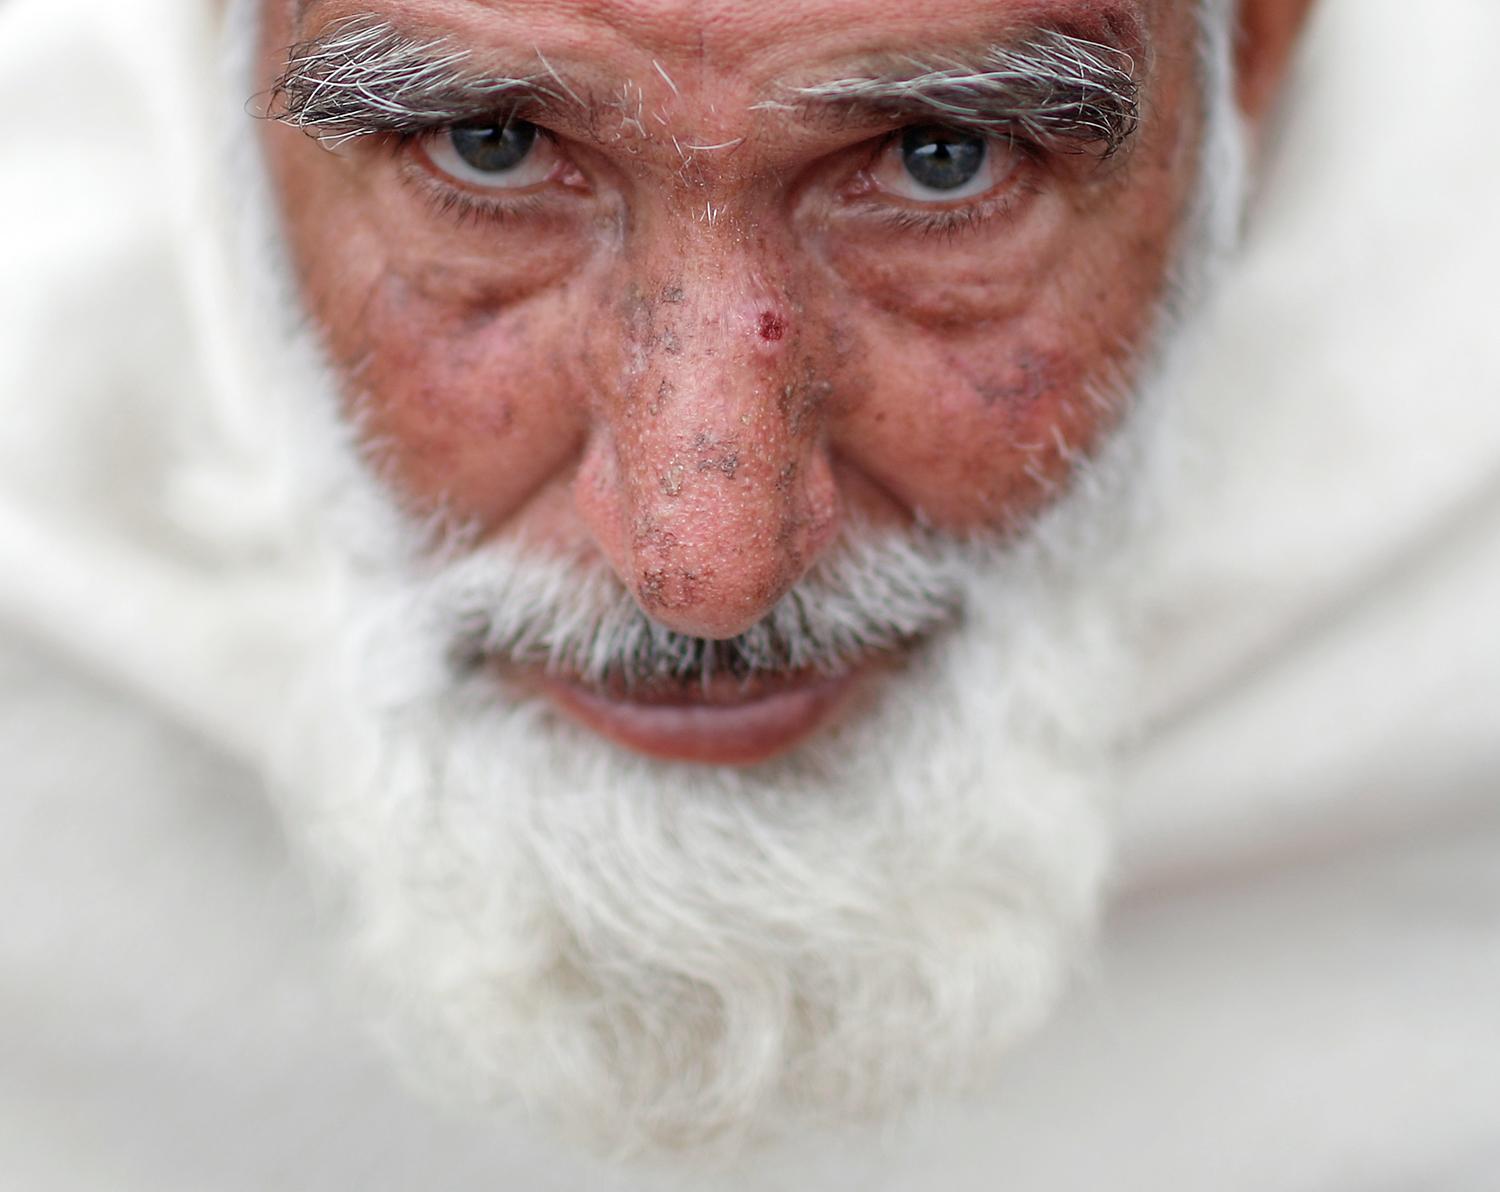 Egy férfi afganisztánban. A legjobban ők félnek